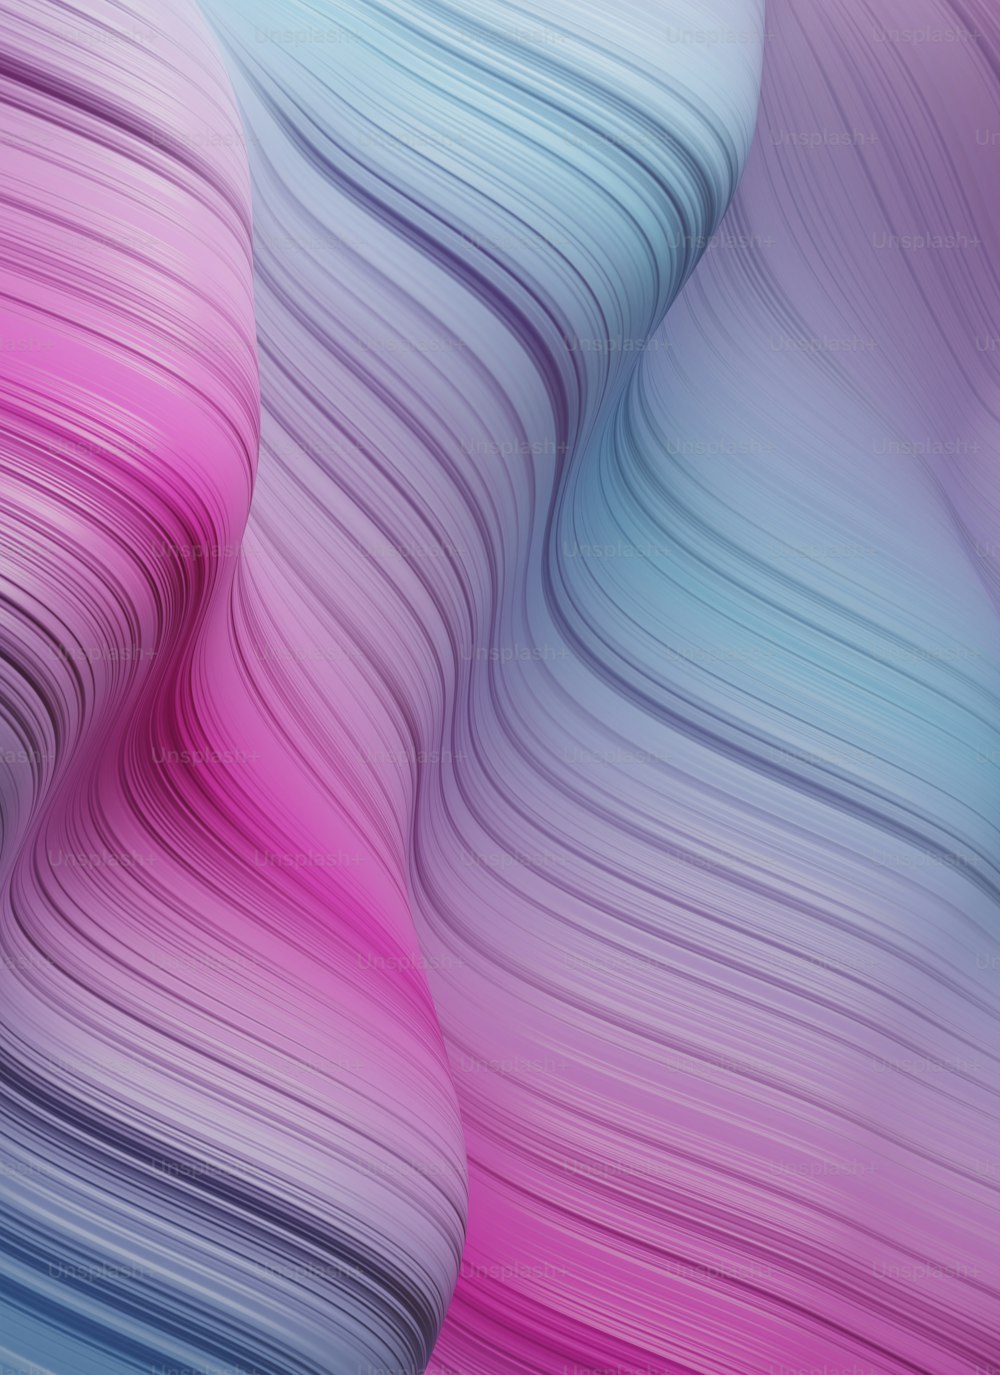 um fundo abstrato com linhas onduladas em rosa, azul e branco